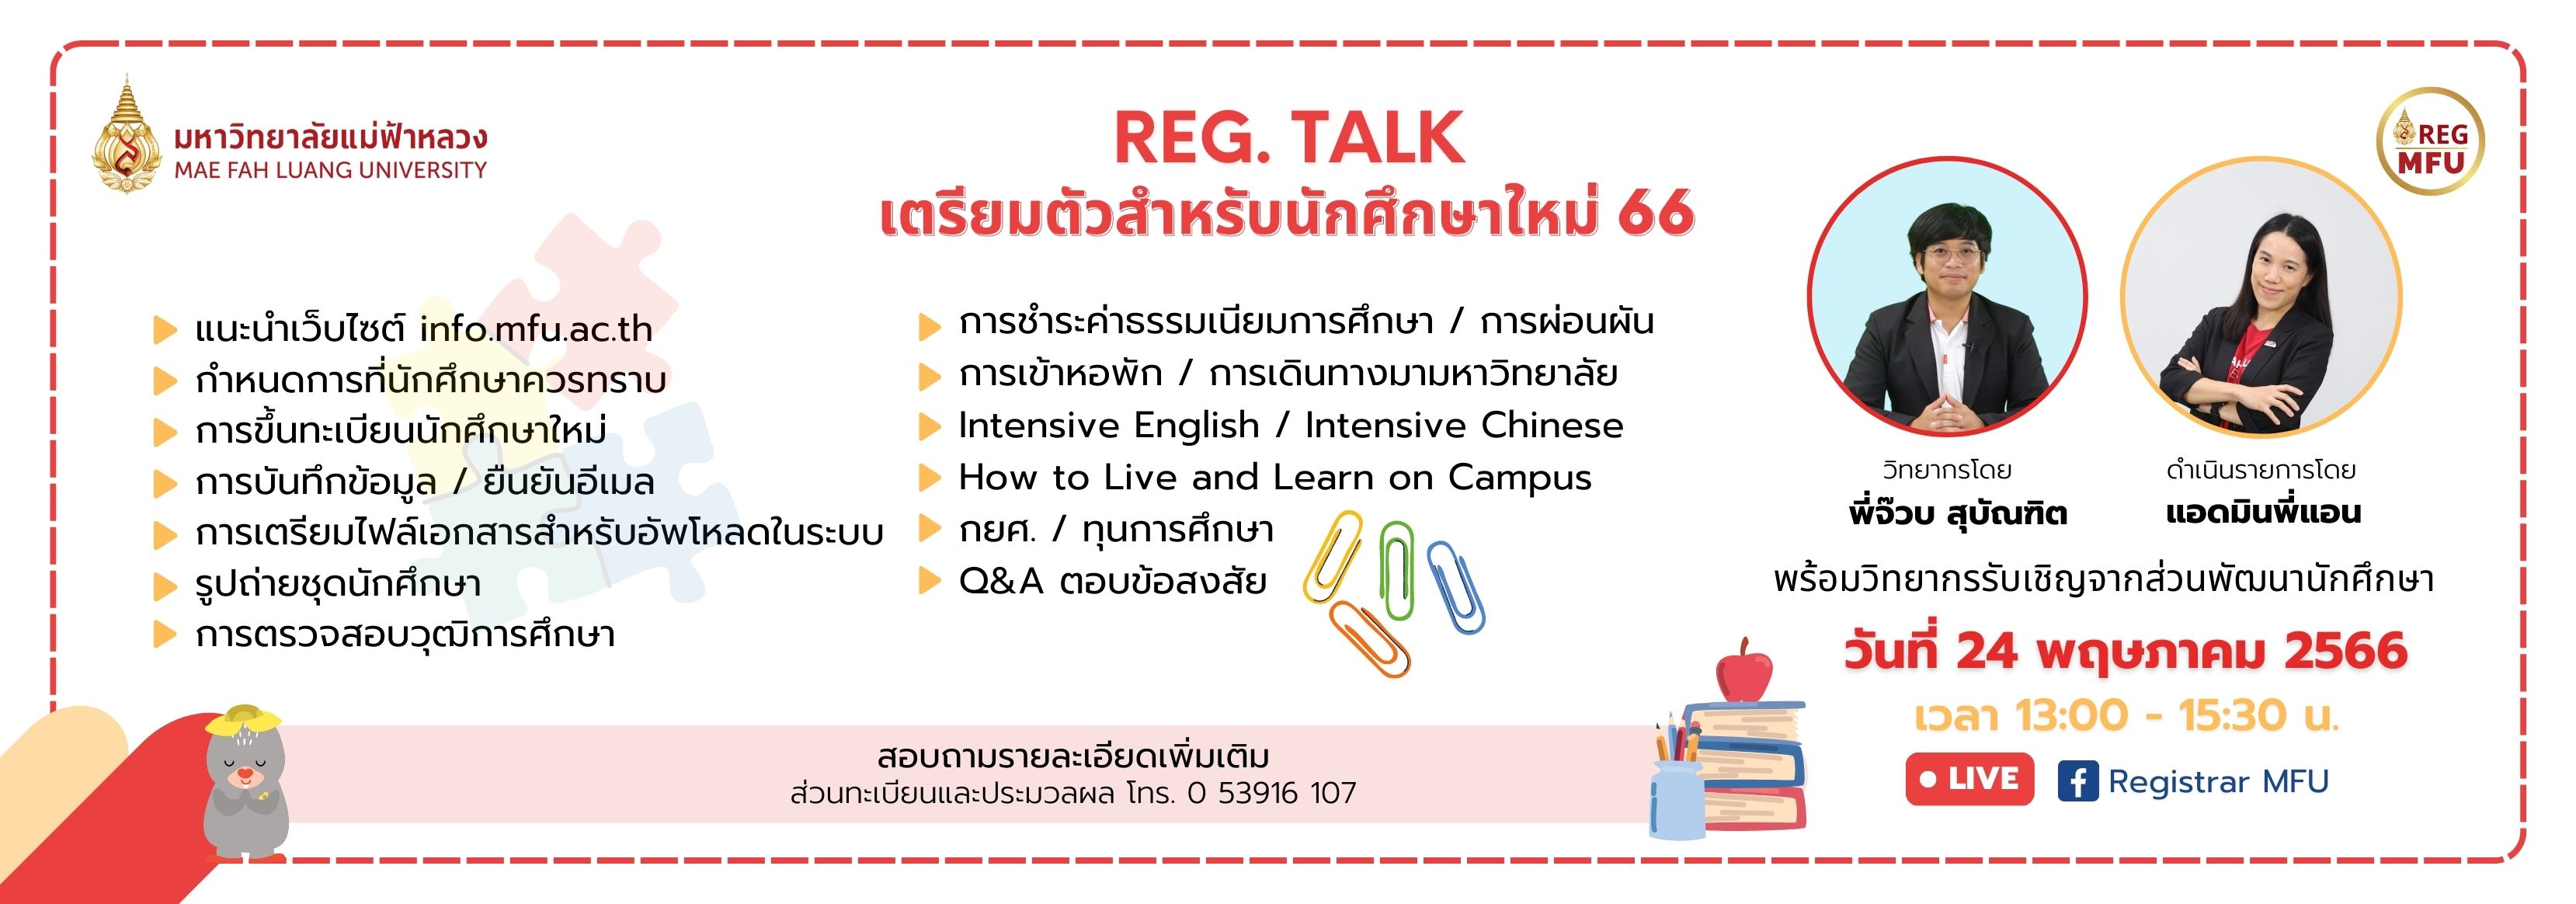 เชิญชวนรับชม รายการ REG Talk "การเตรียมตัวสำหรับนักศึกษาใหม่ 66" วันที่ 24 พฤษภาคม 2565 นี้